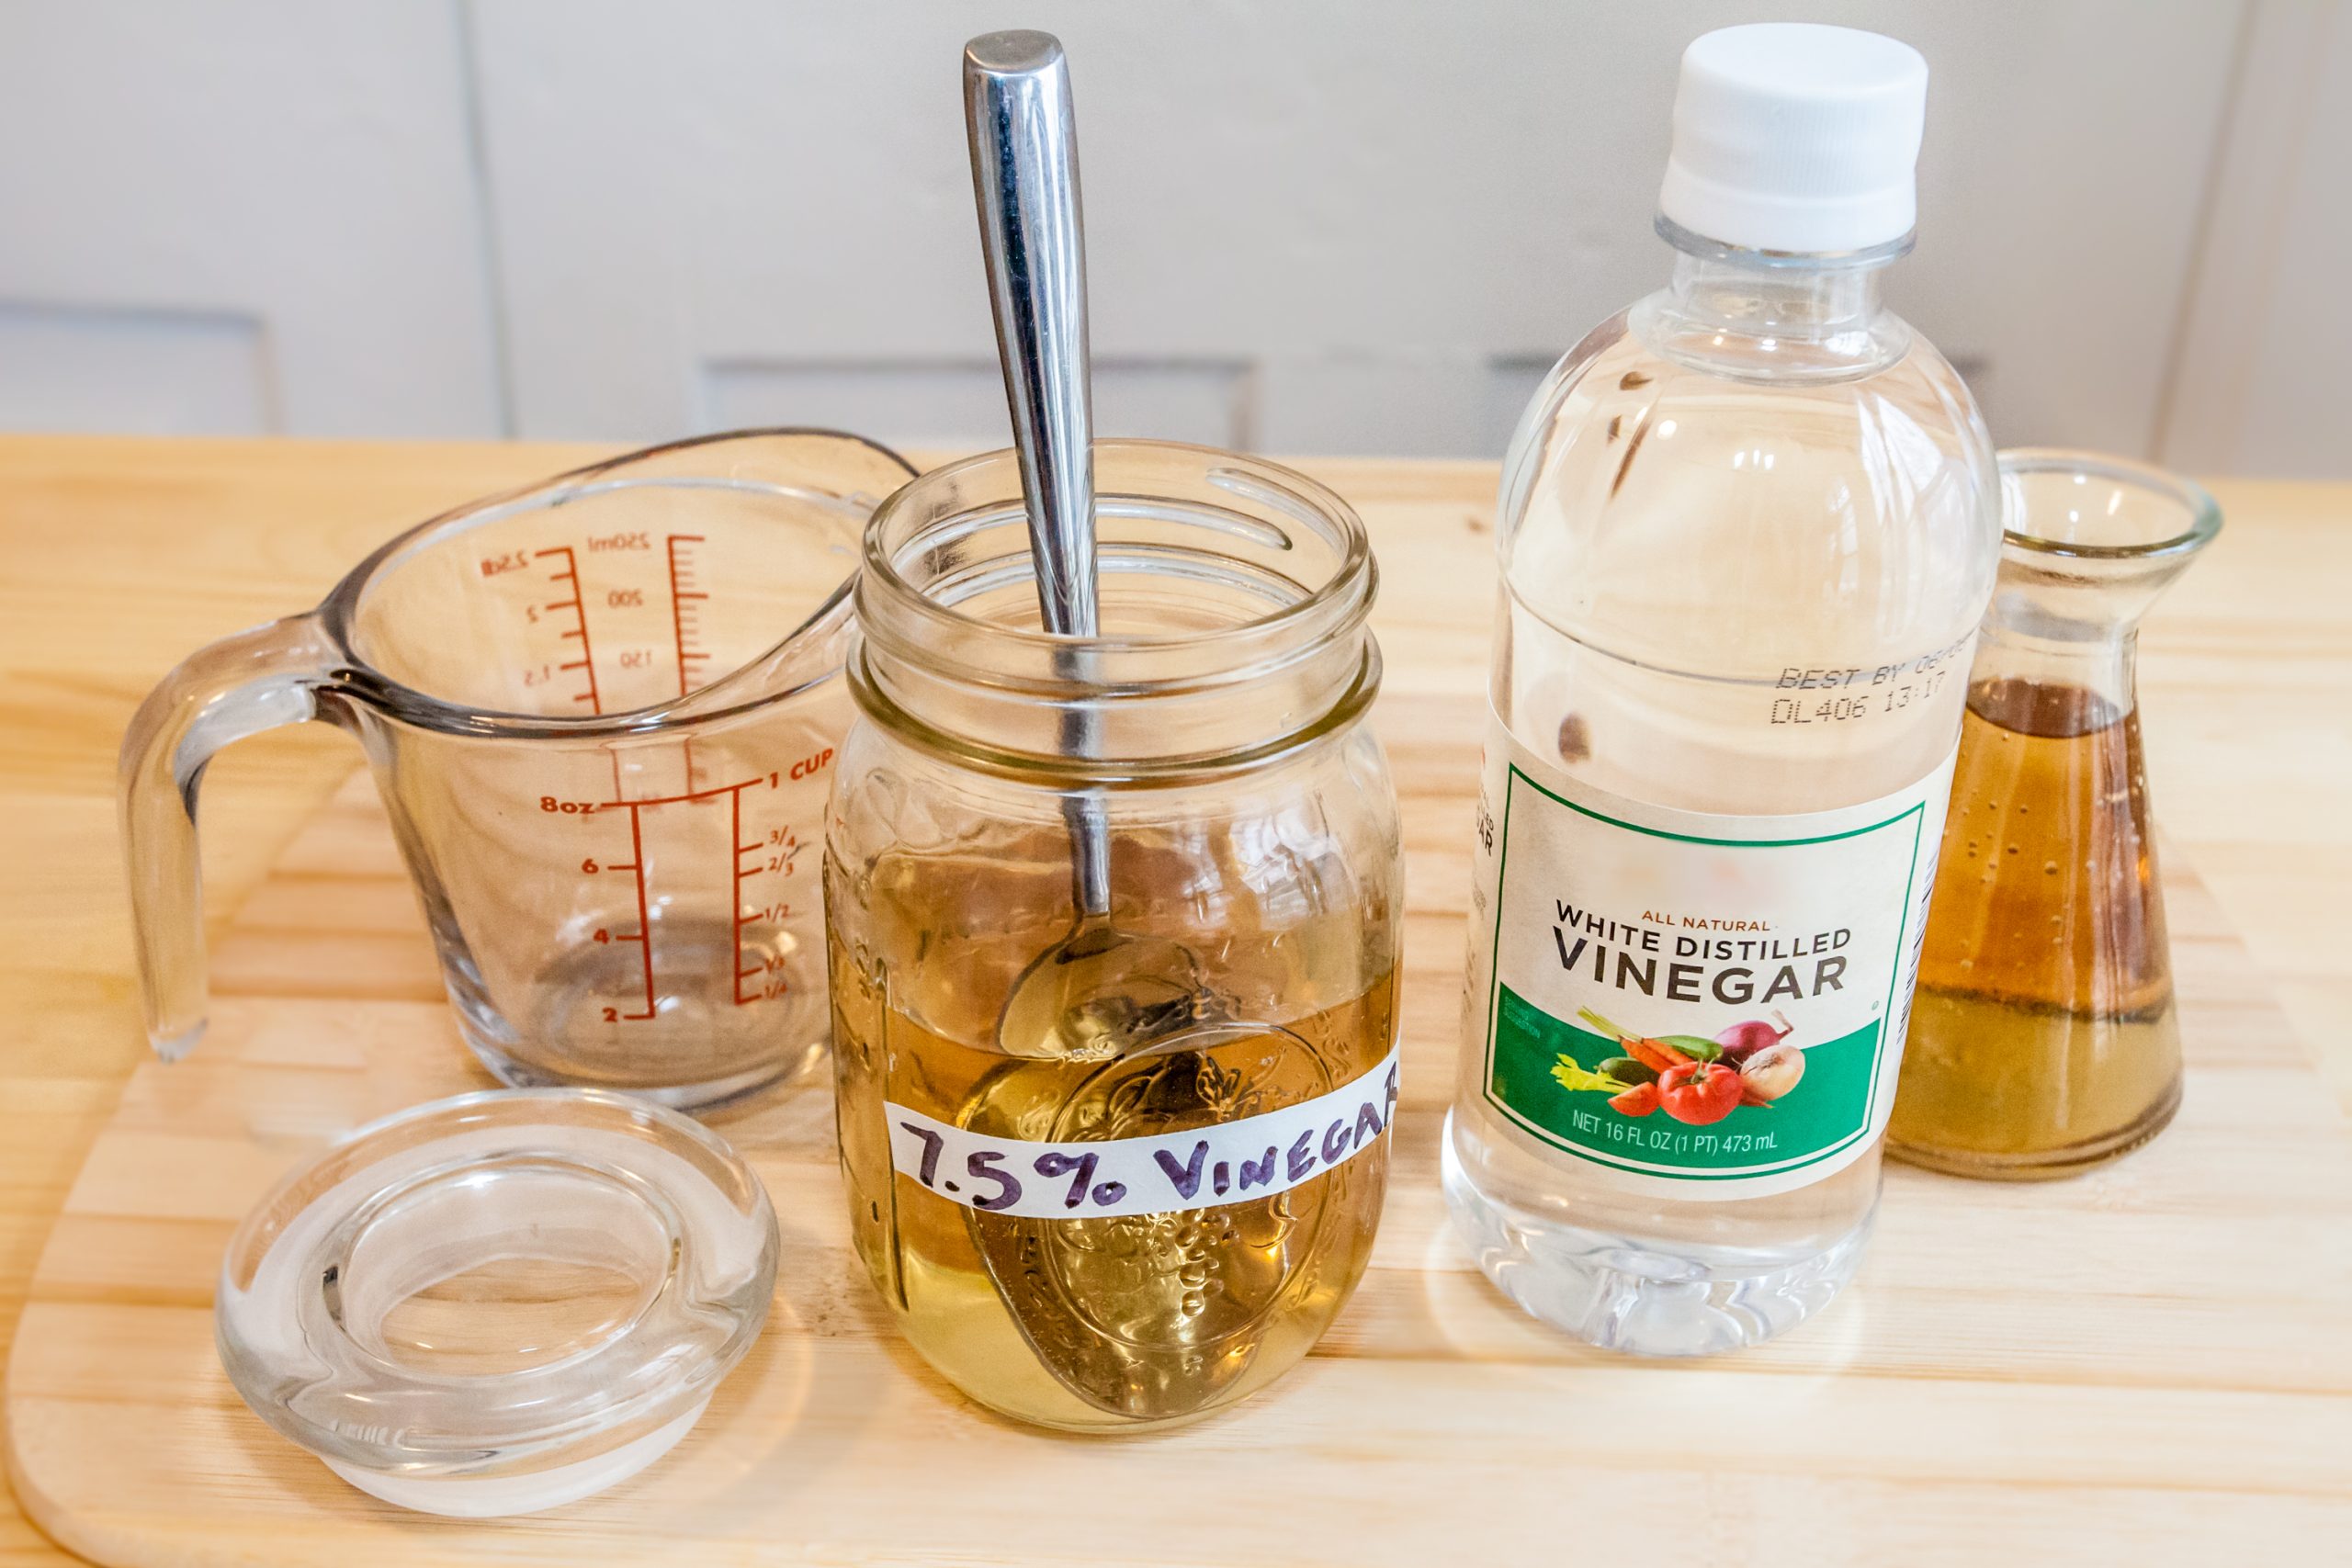 How to reduce vinegar taste in food